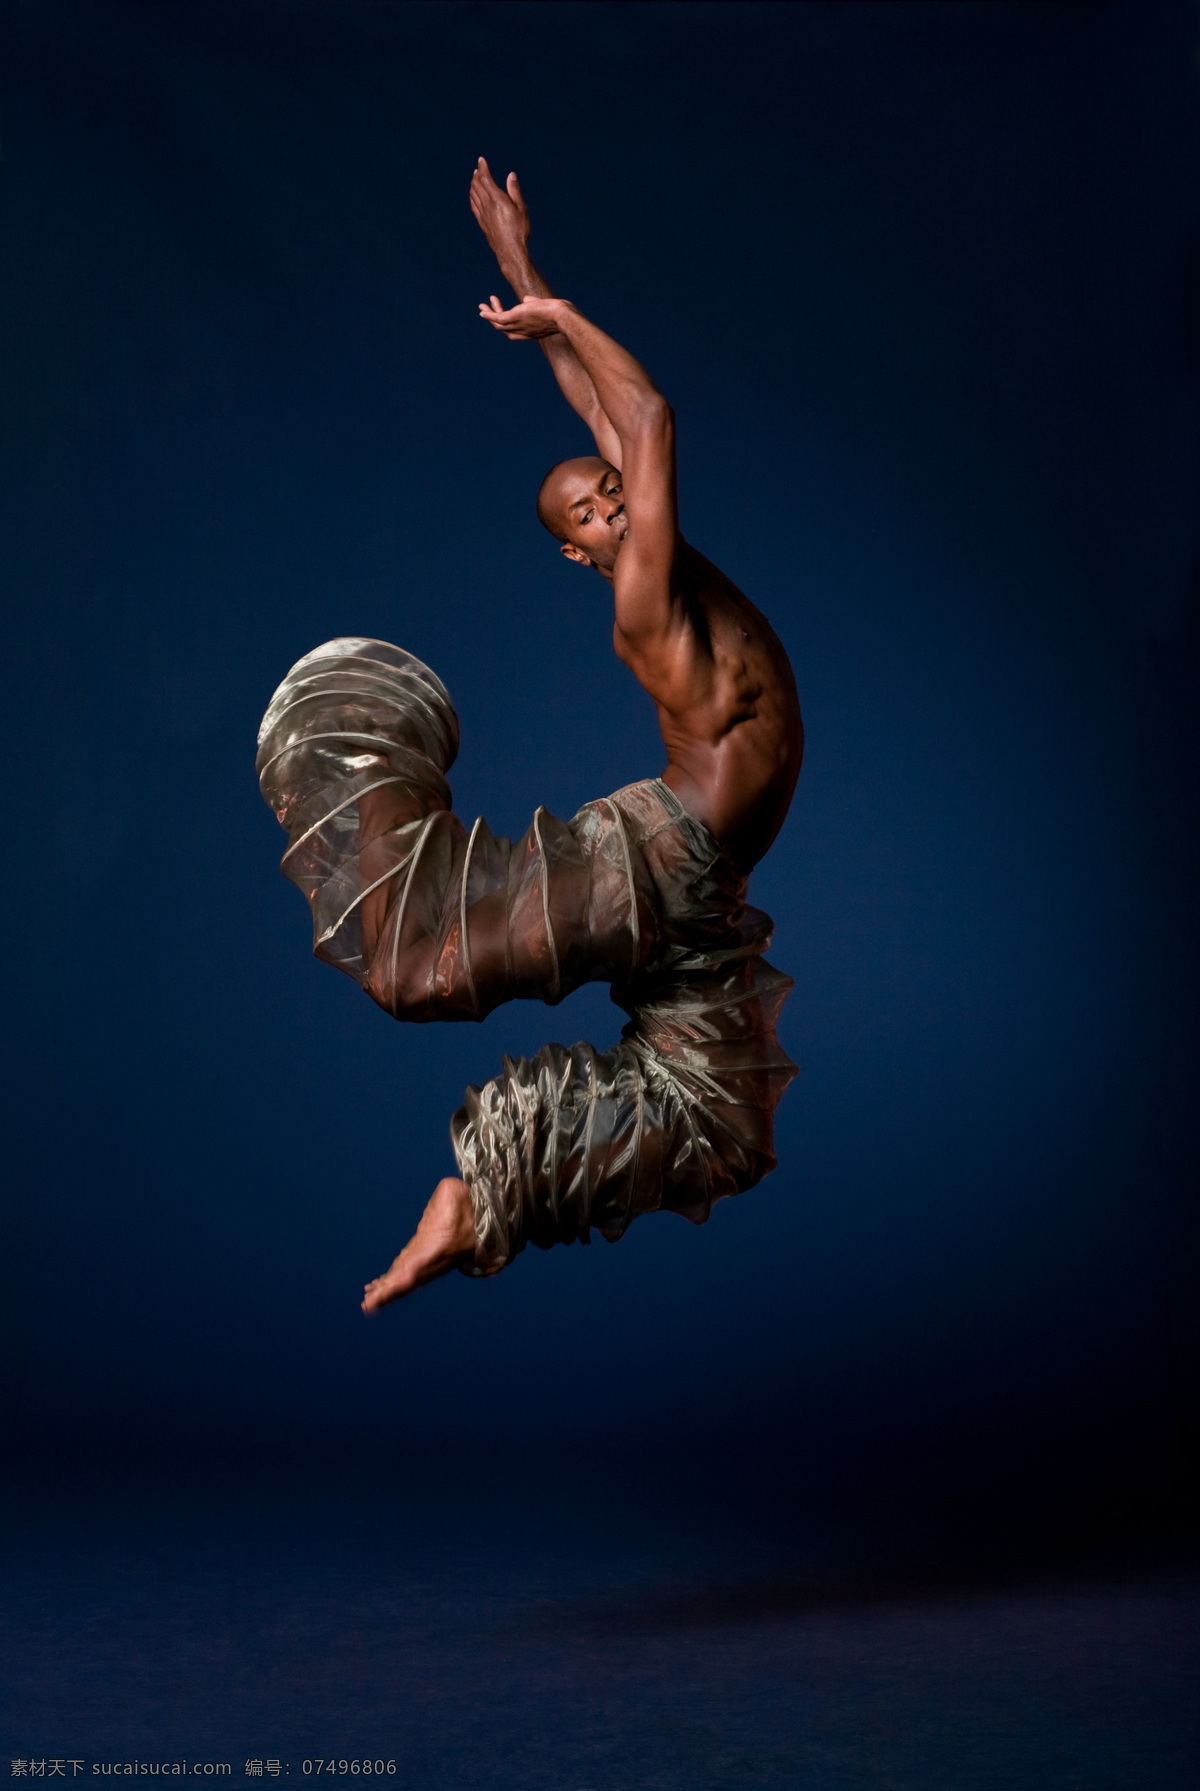 芭蕾 芭蕾舞 飞舞 男人 男性 男性男人 人物图库 现代芭蕾 舞 舞蹈 跳舞 跳 跳跃 舞动 舞姿 舞者 舞蹈家 喇叭裤 光头 光膀 全身像 摄影图库 psd源文件